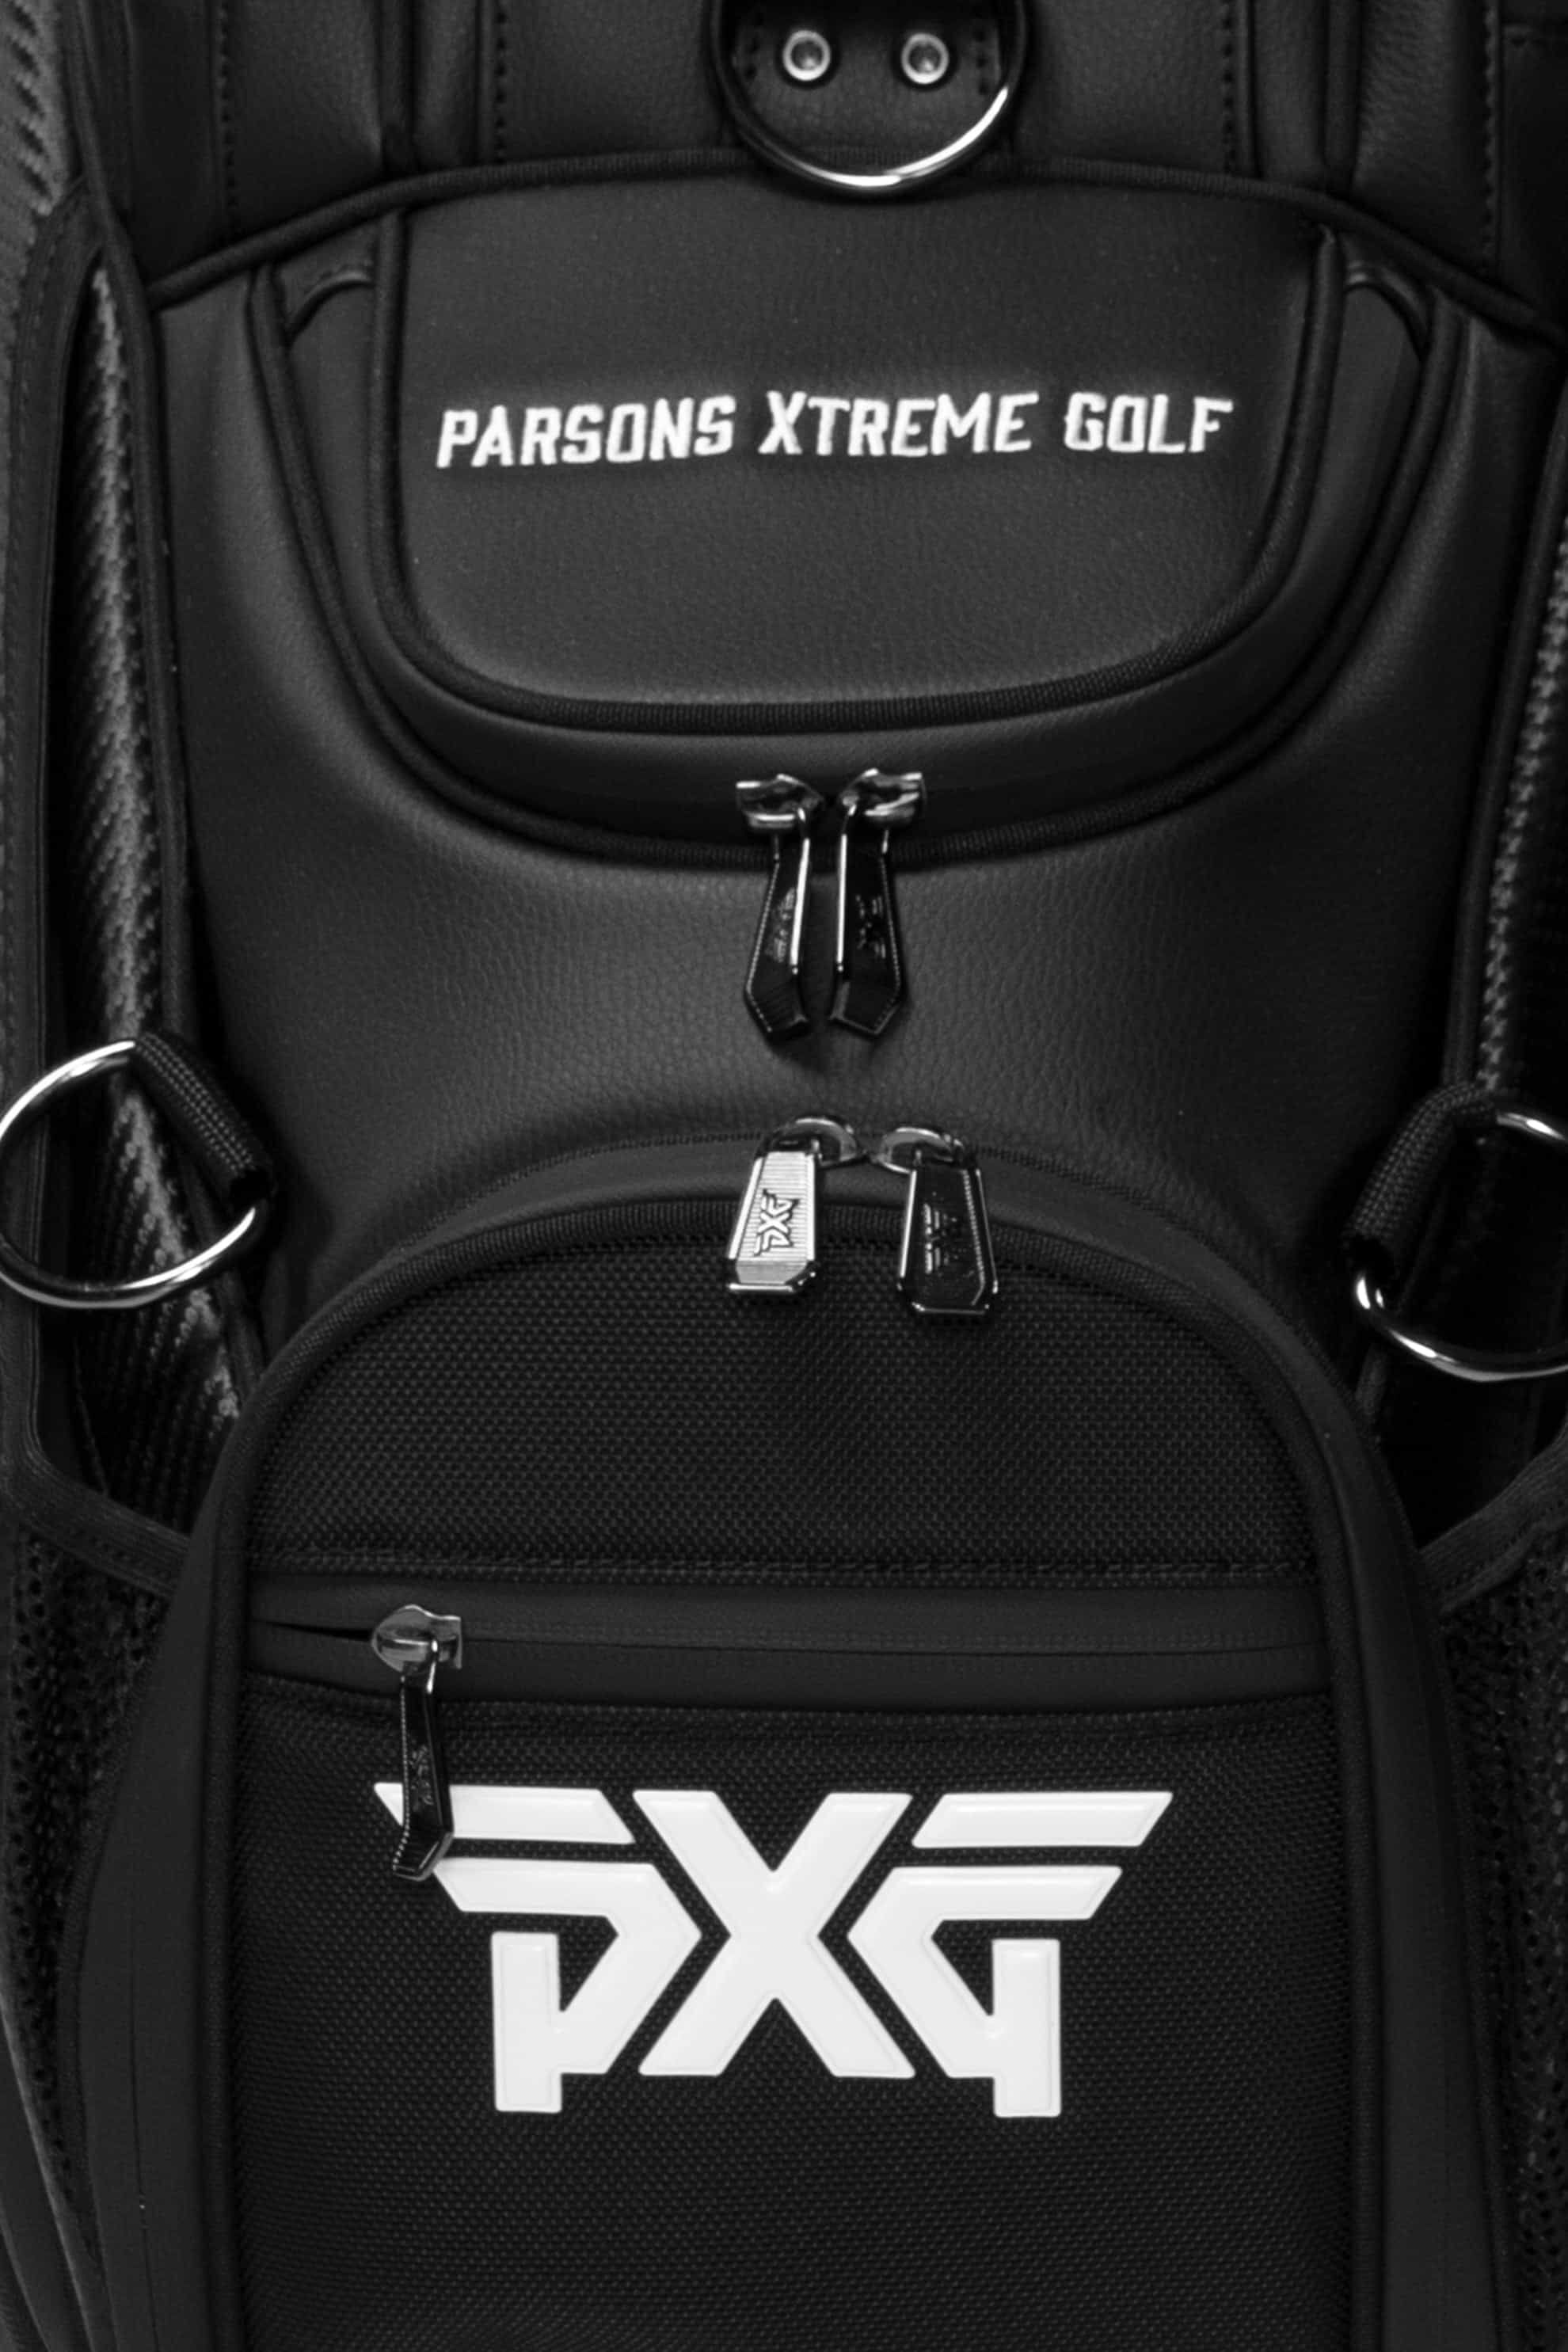 Tour Bag | Shop the Highest Quality Golf Apparel, Gear